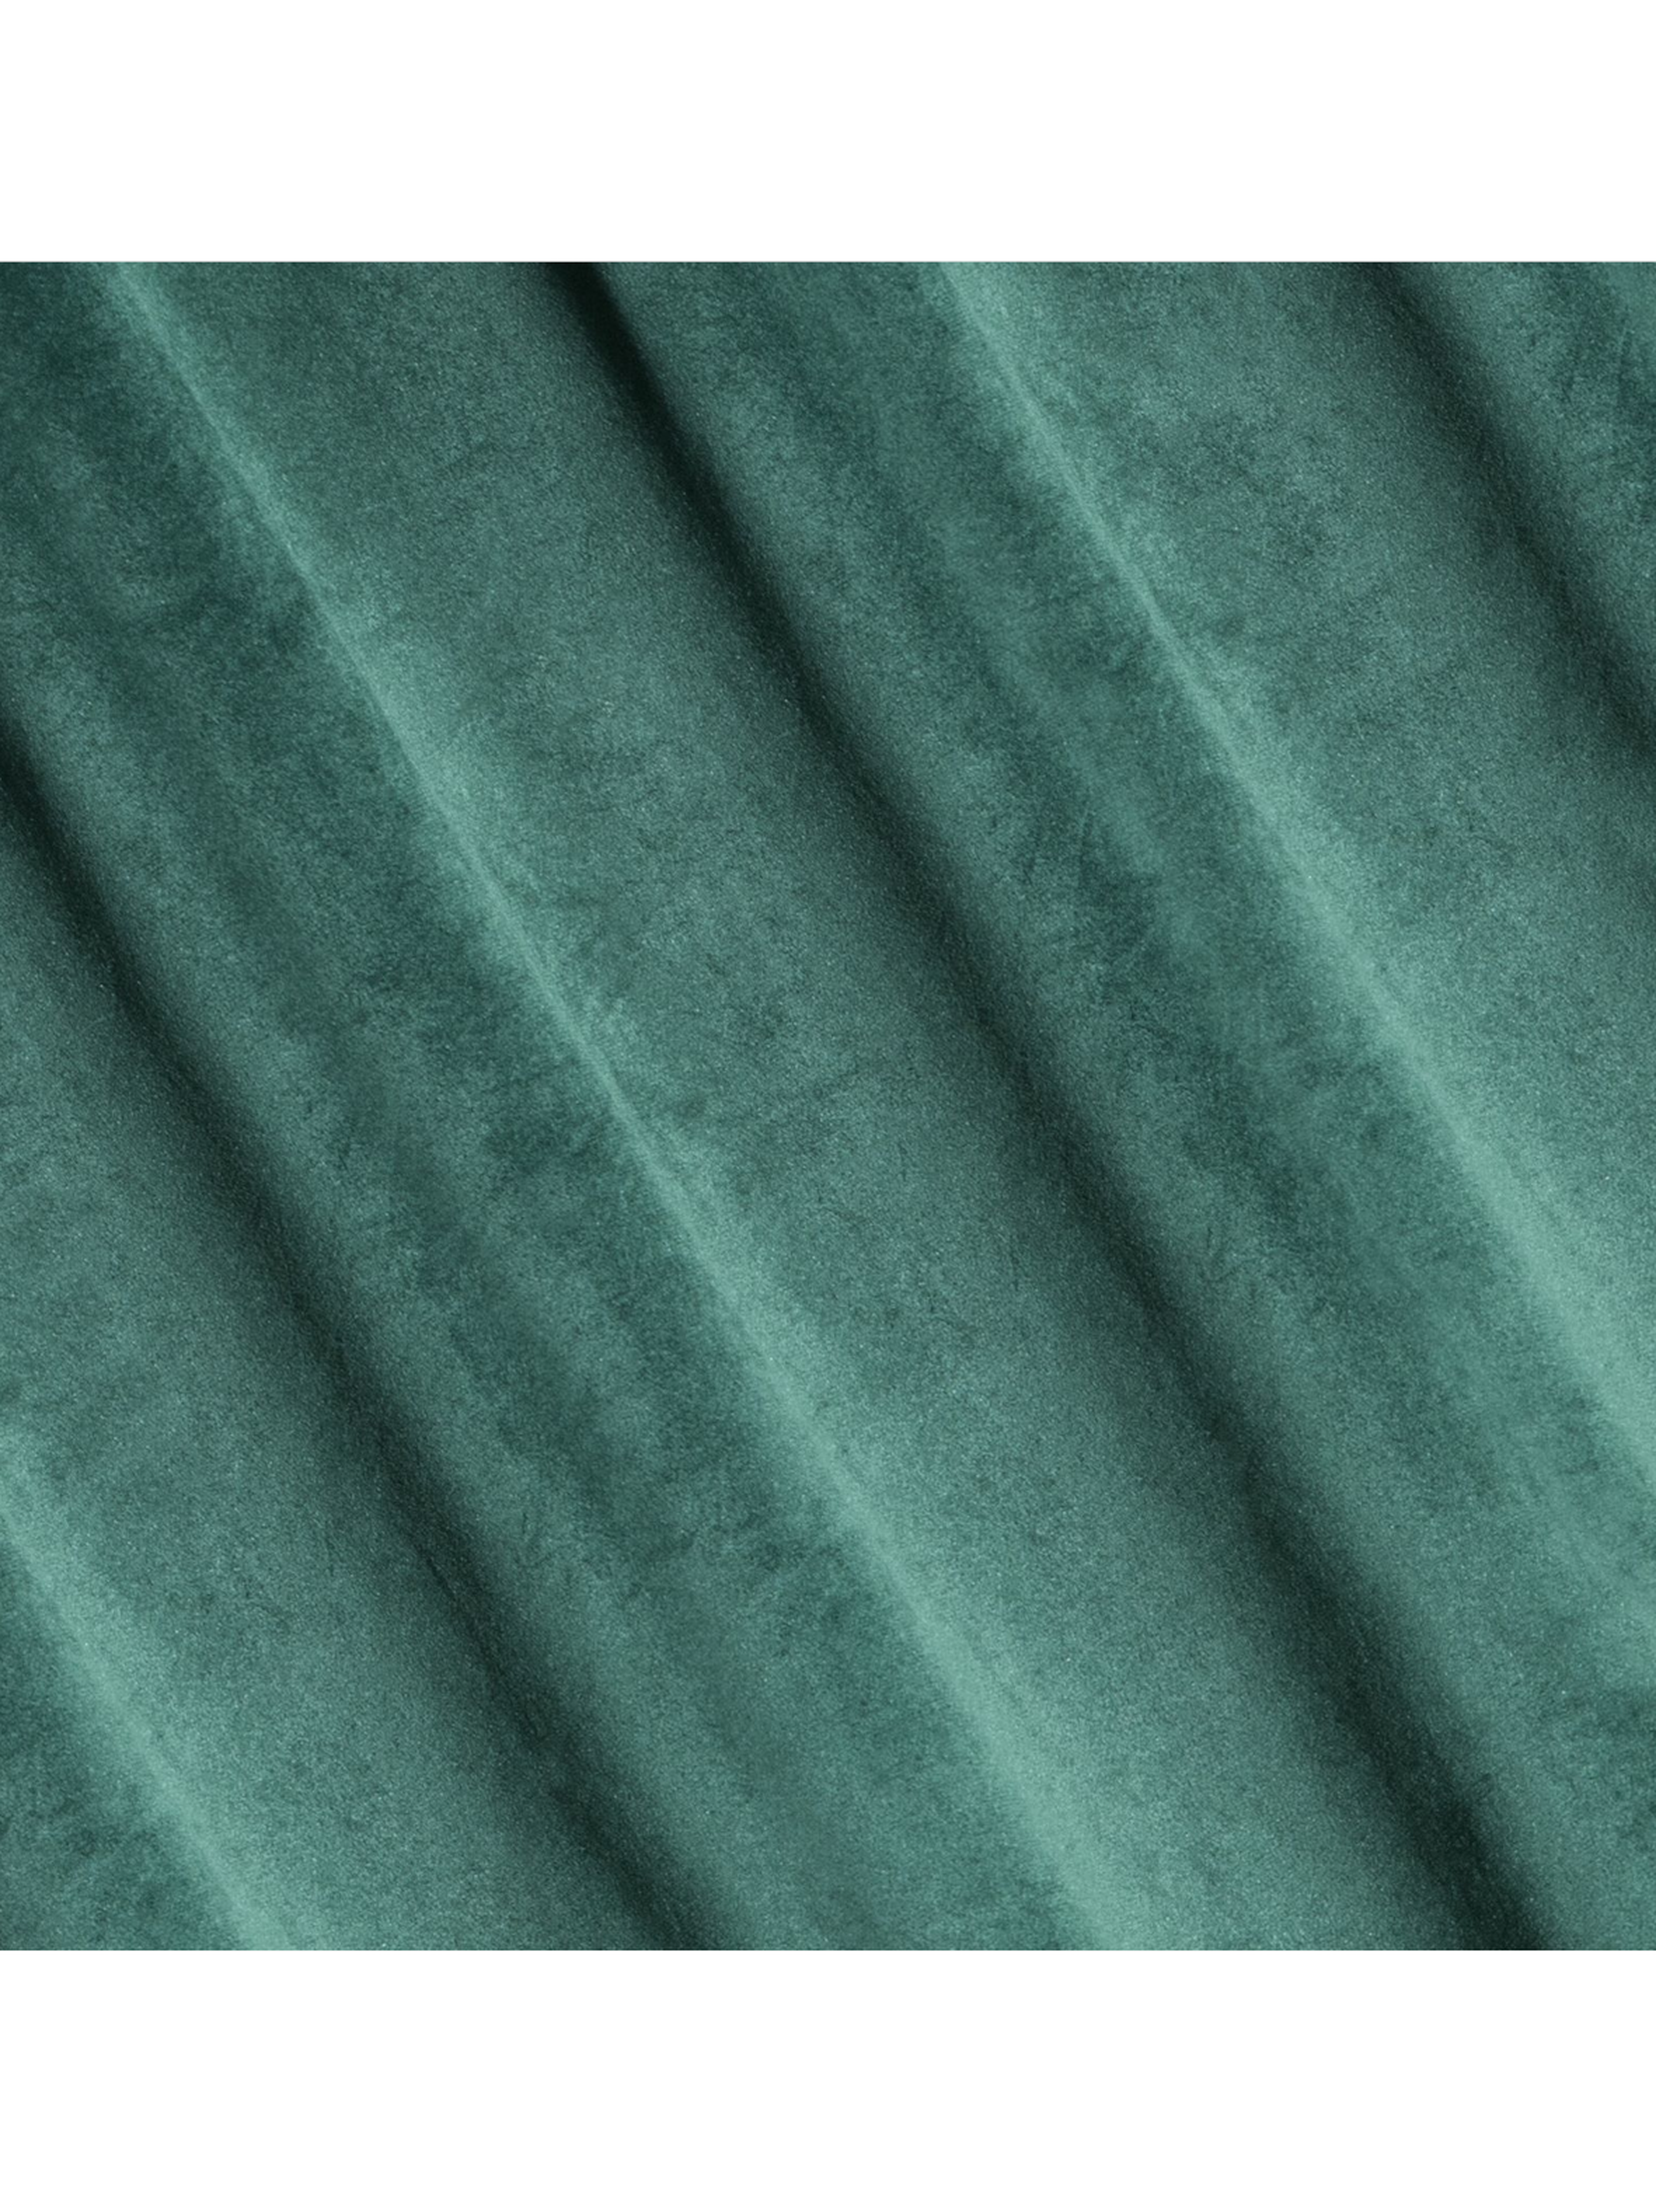 Zielona zasłona na taśmie 140x300 cm